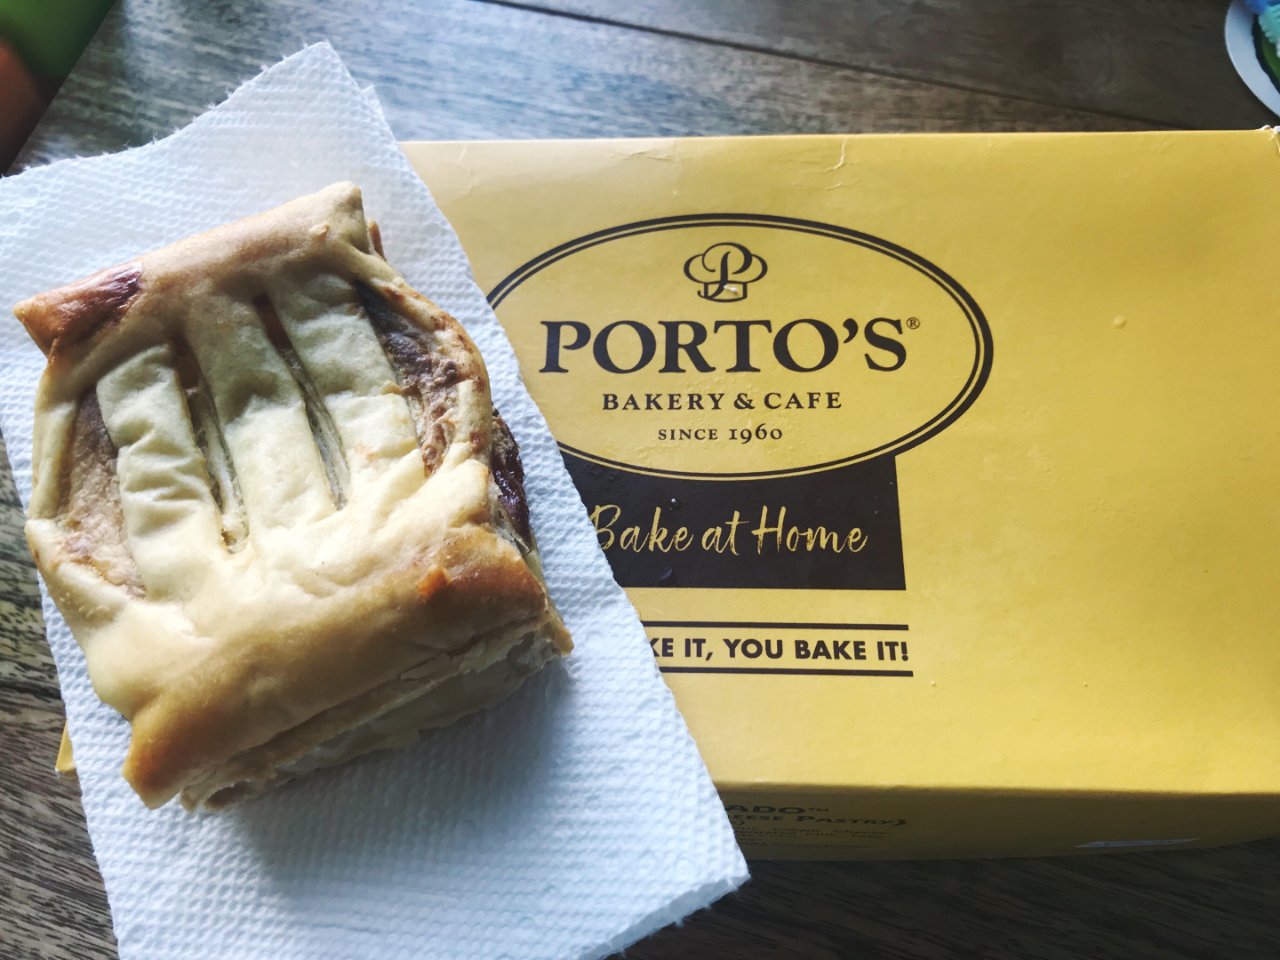 Porto’s Bakery